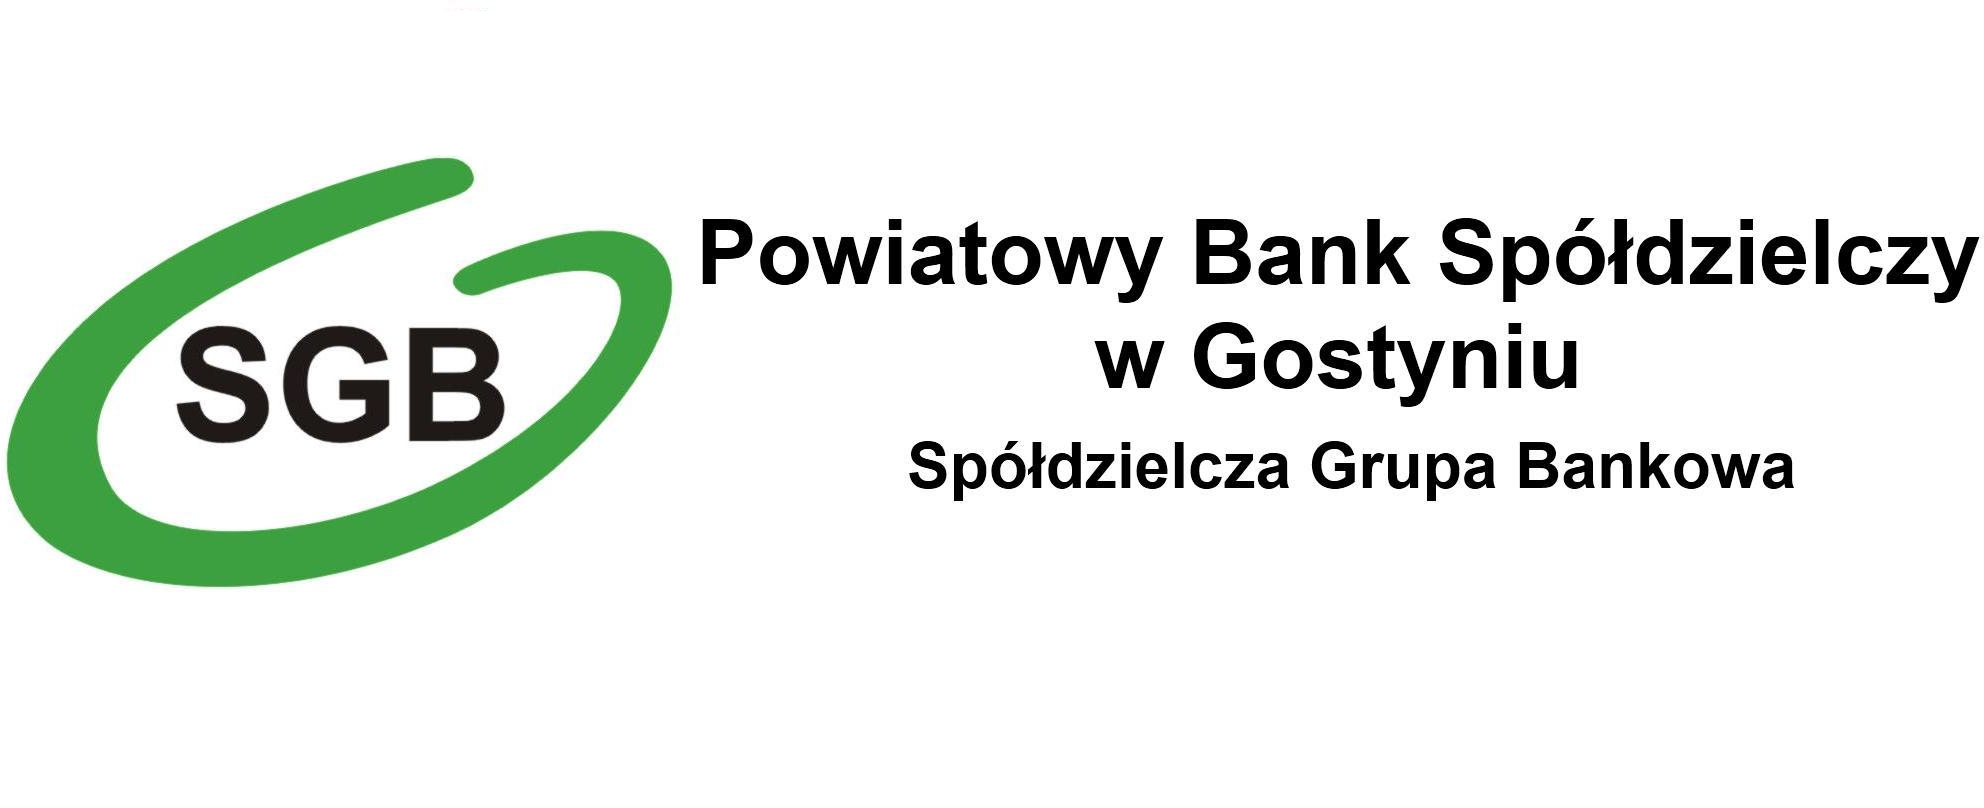 3D Secure - Powiatowy Bank Spółdzielczy w Gostyniu